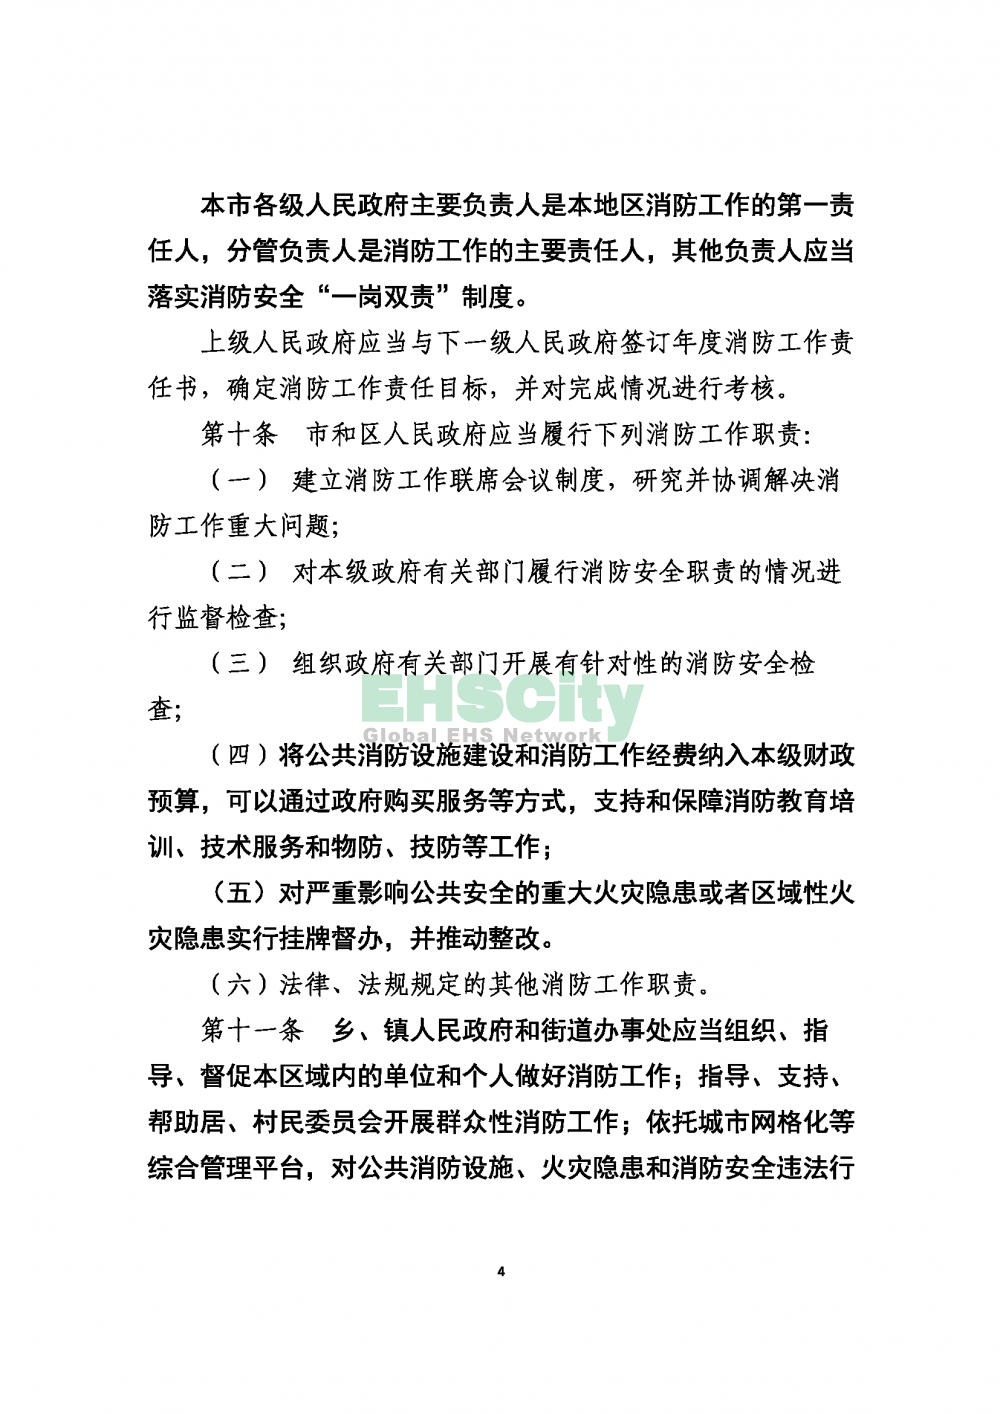 2020版上海消防条例_页面_04